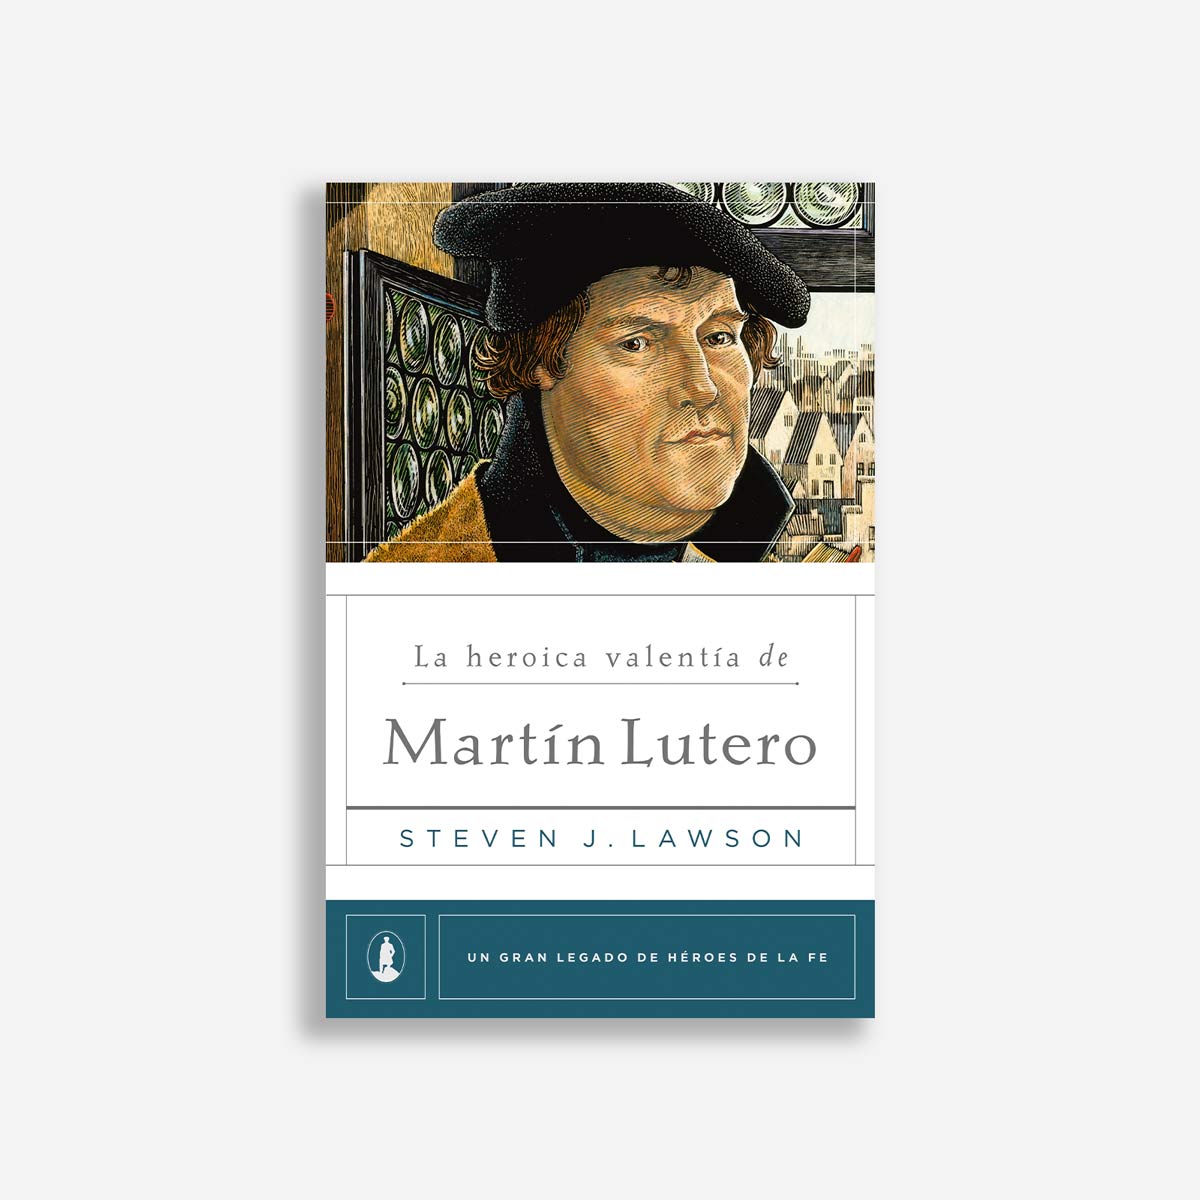 La heroica valentía de Martín Lutero